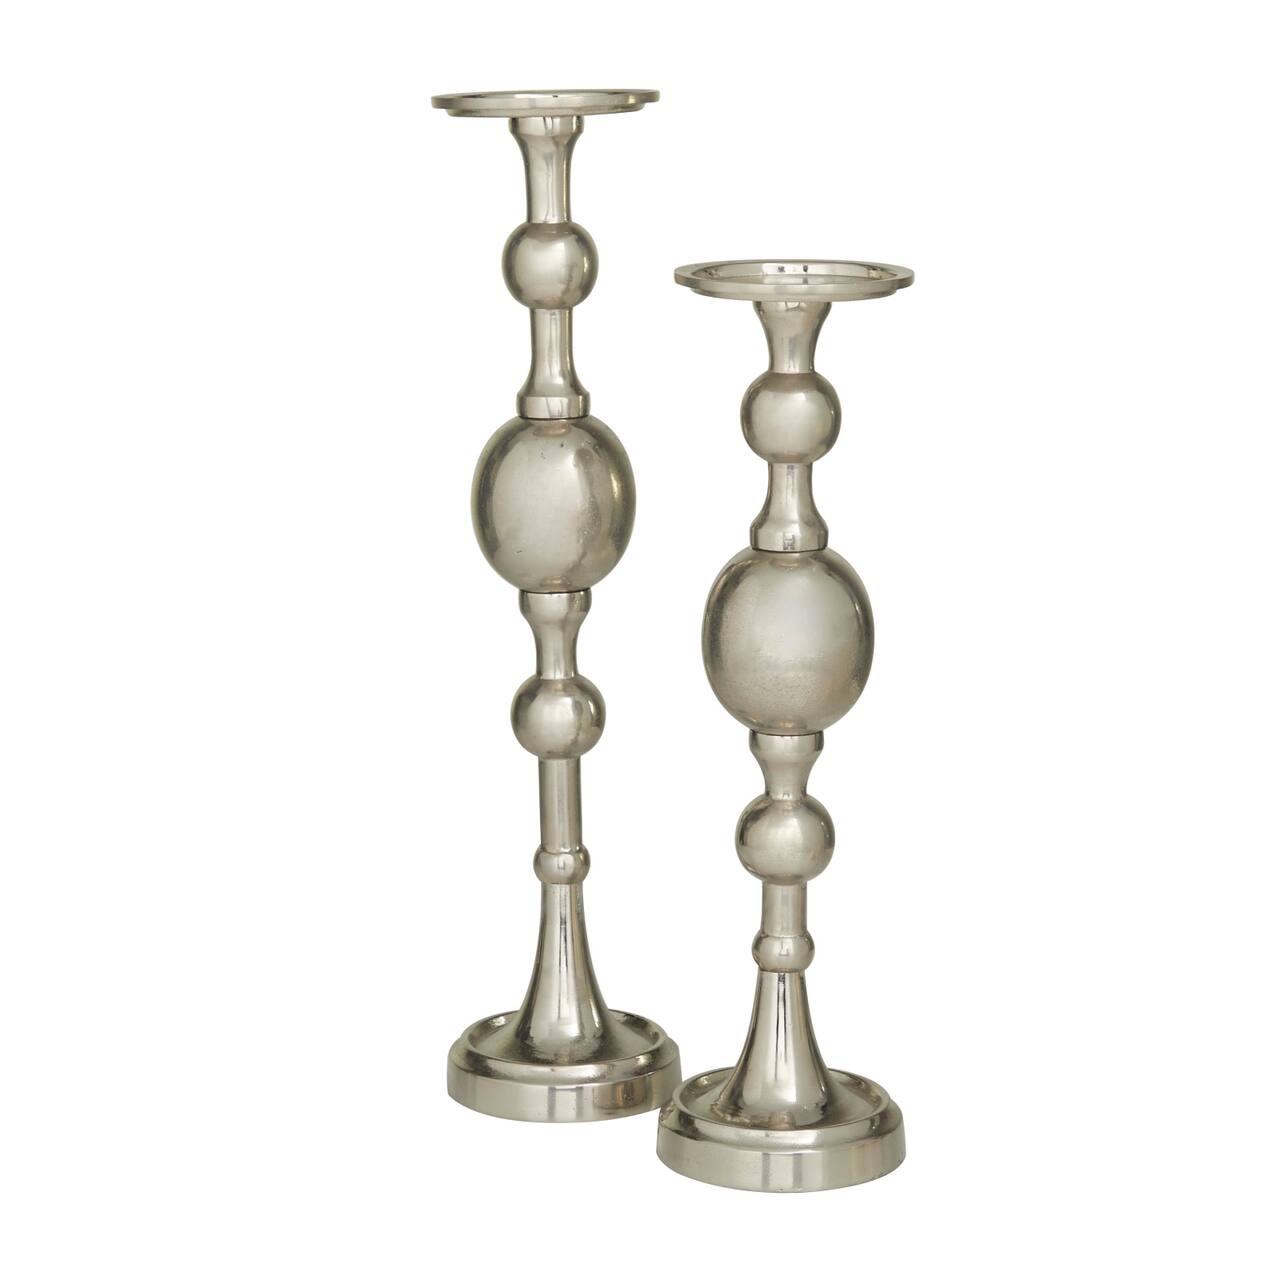 The Novogratz Silver Glam Candle Holder Set